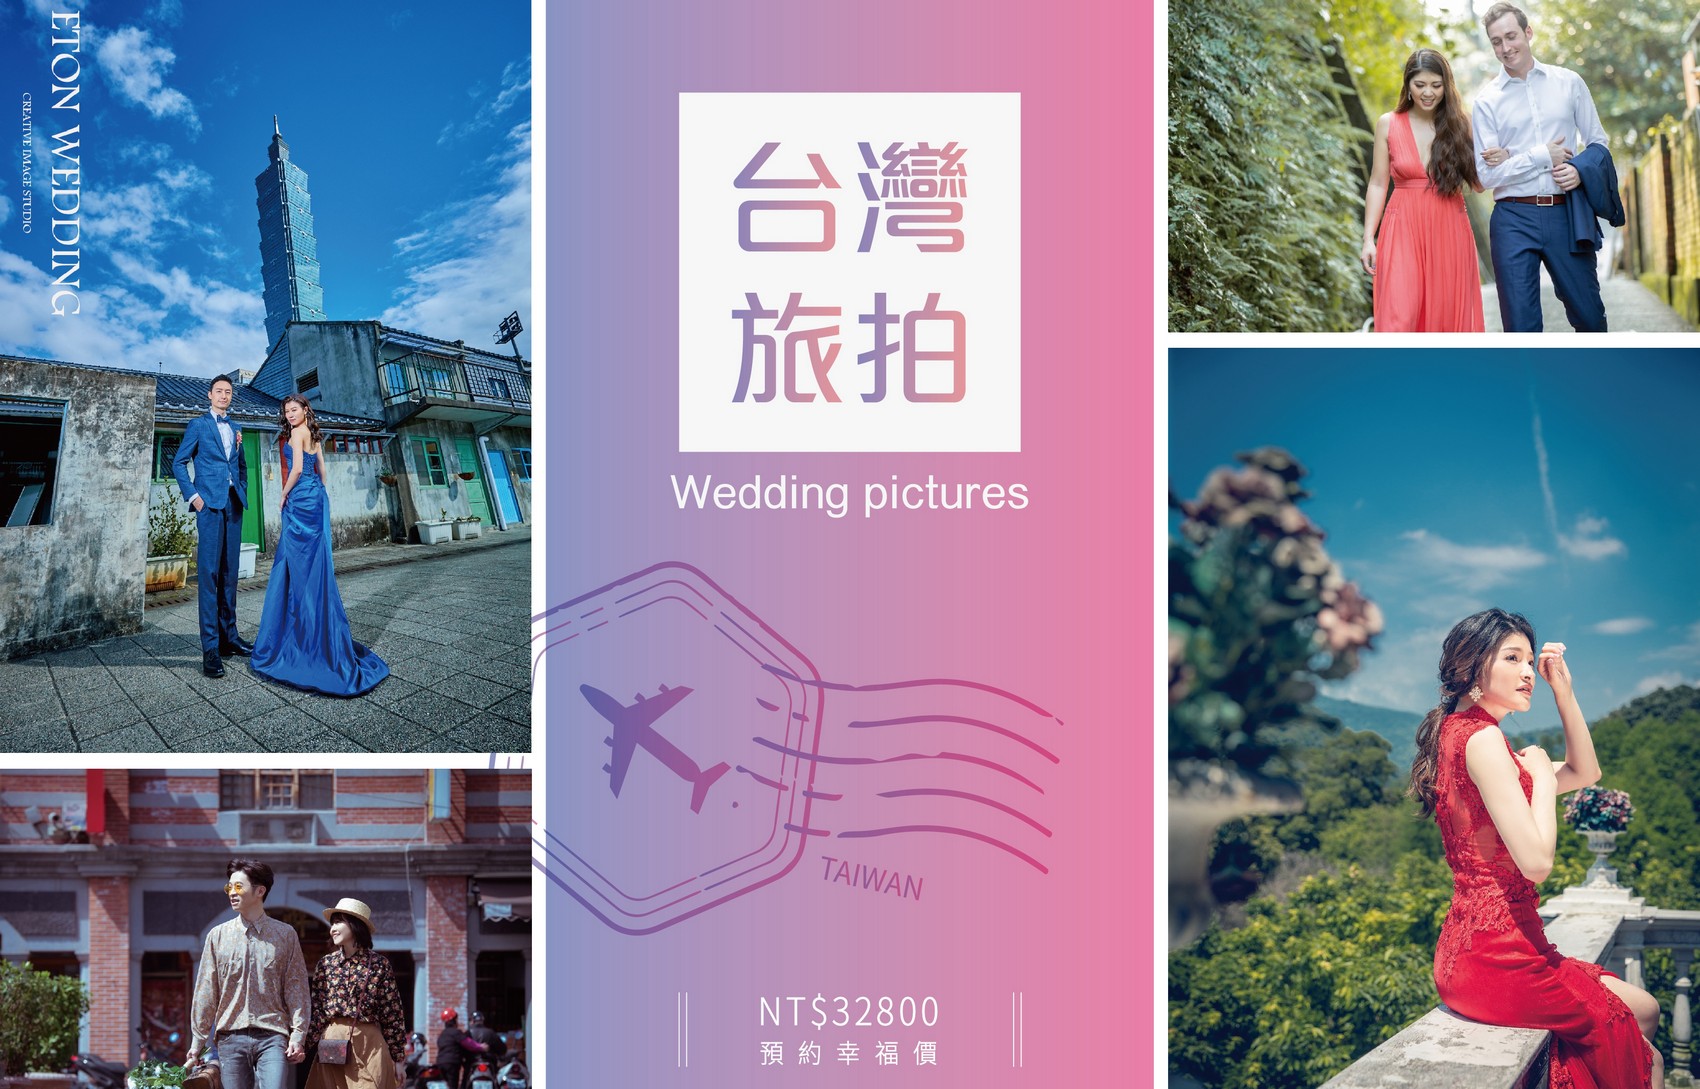 台灣 婚紗工作室,台灣 婚紗攝影價格,台北拍婚紗,台北 婚紗攝影,臺北 婚紗工作室